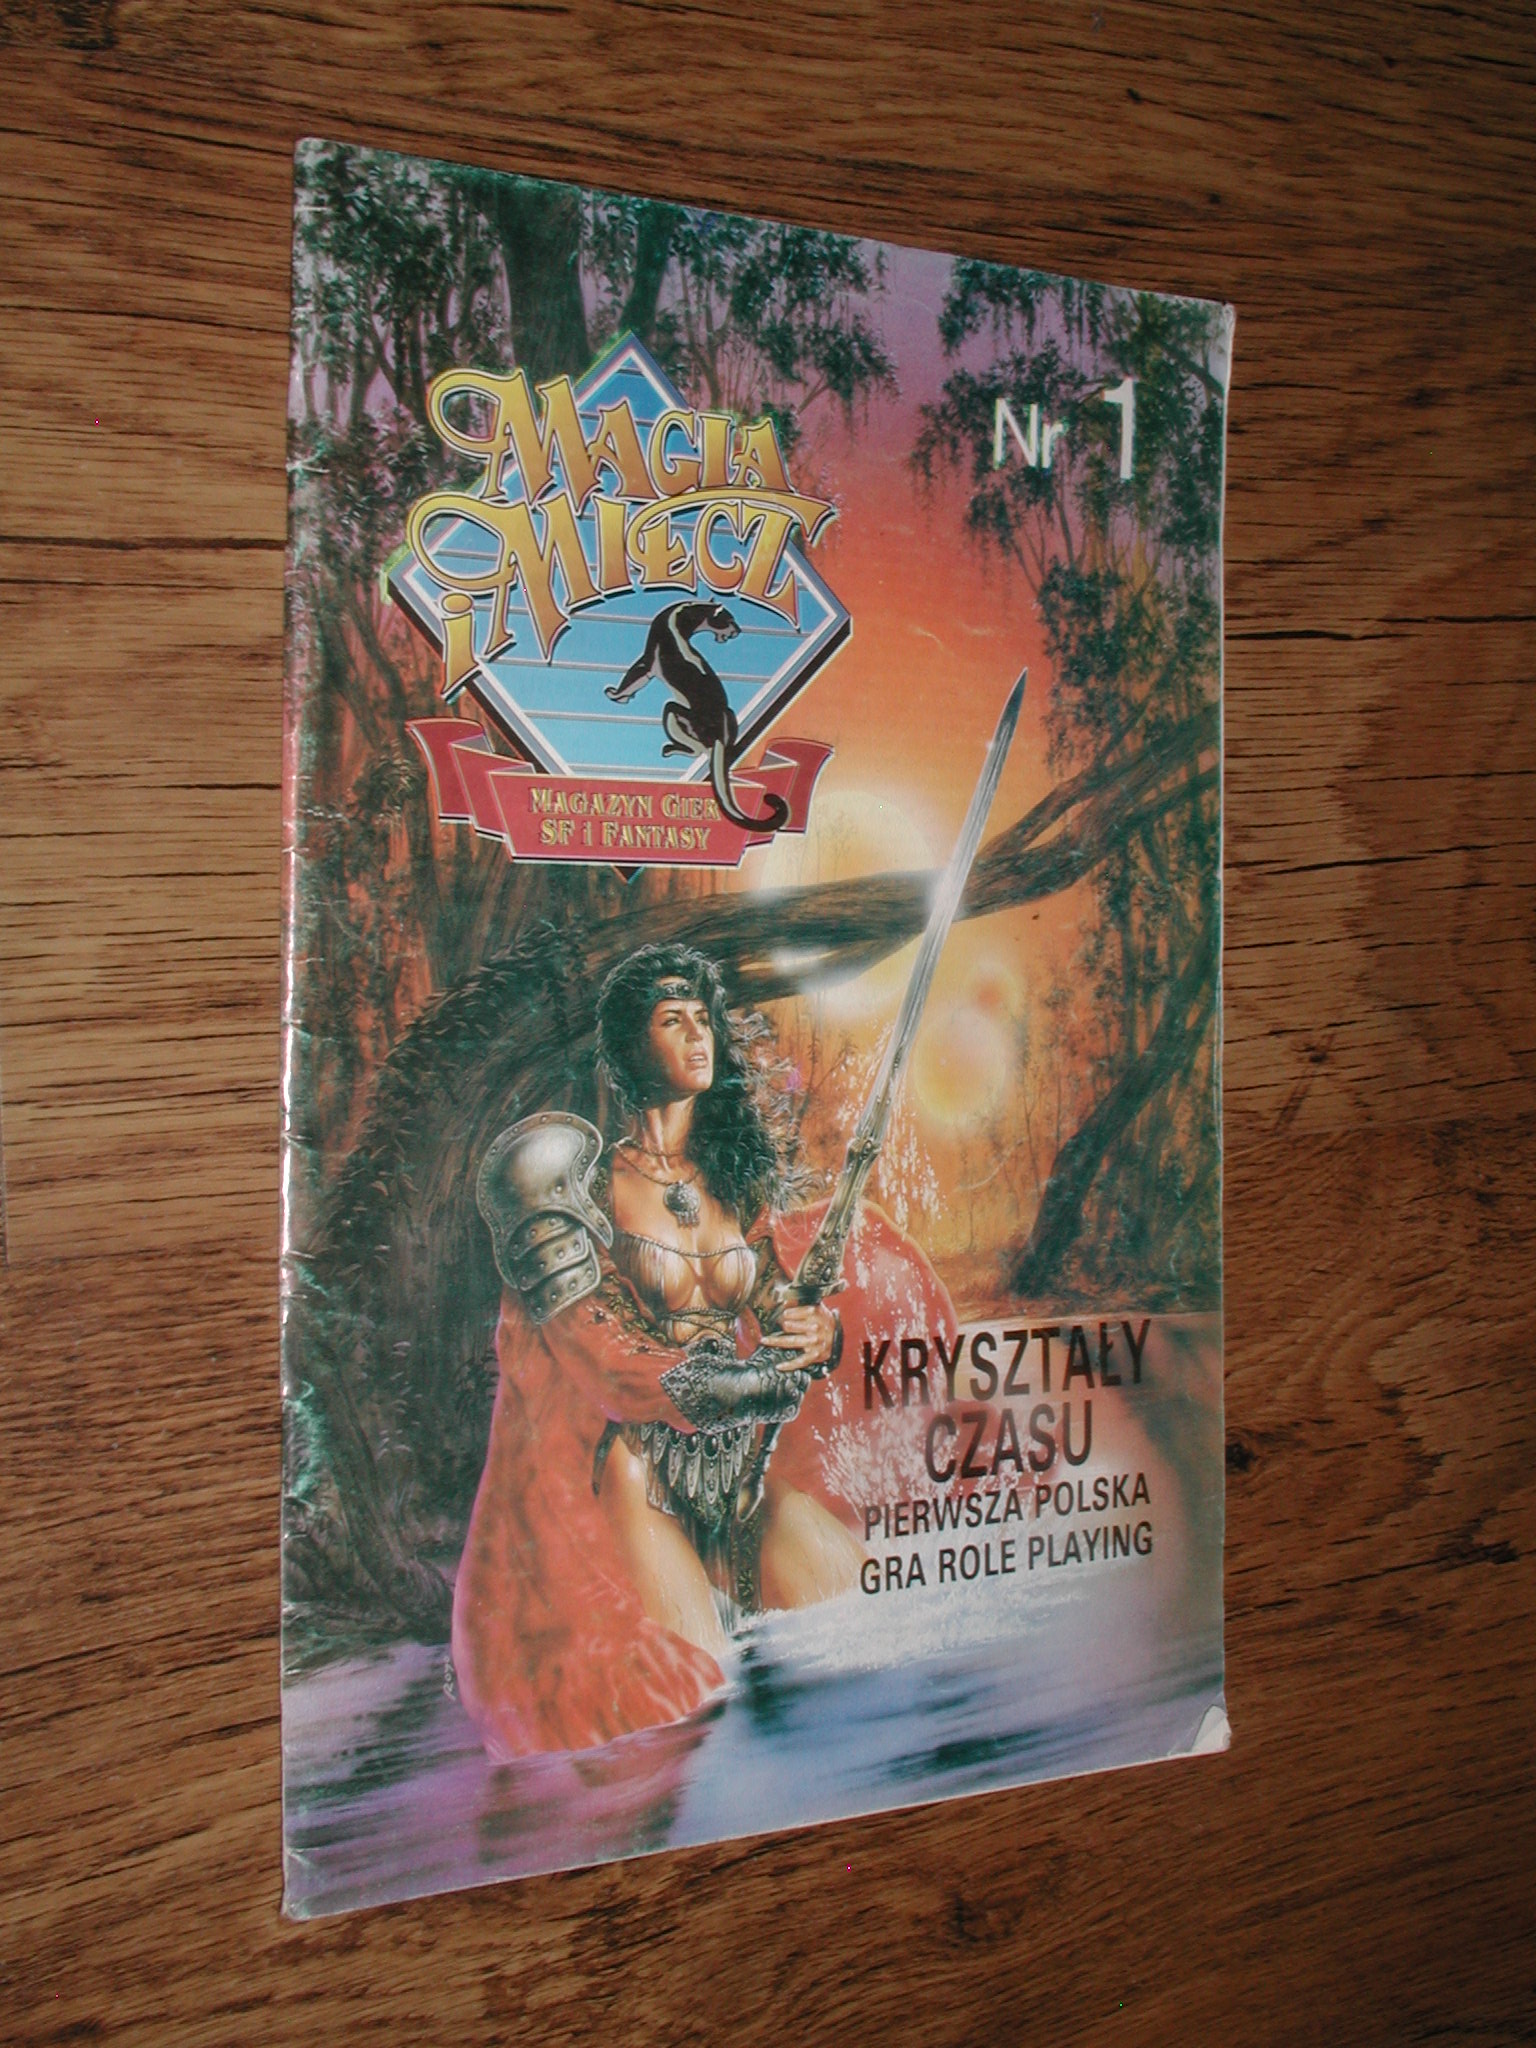 MAGIA I MIECZ 1/1993 - Magazyn gier SF i Fantasy